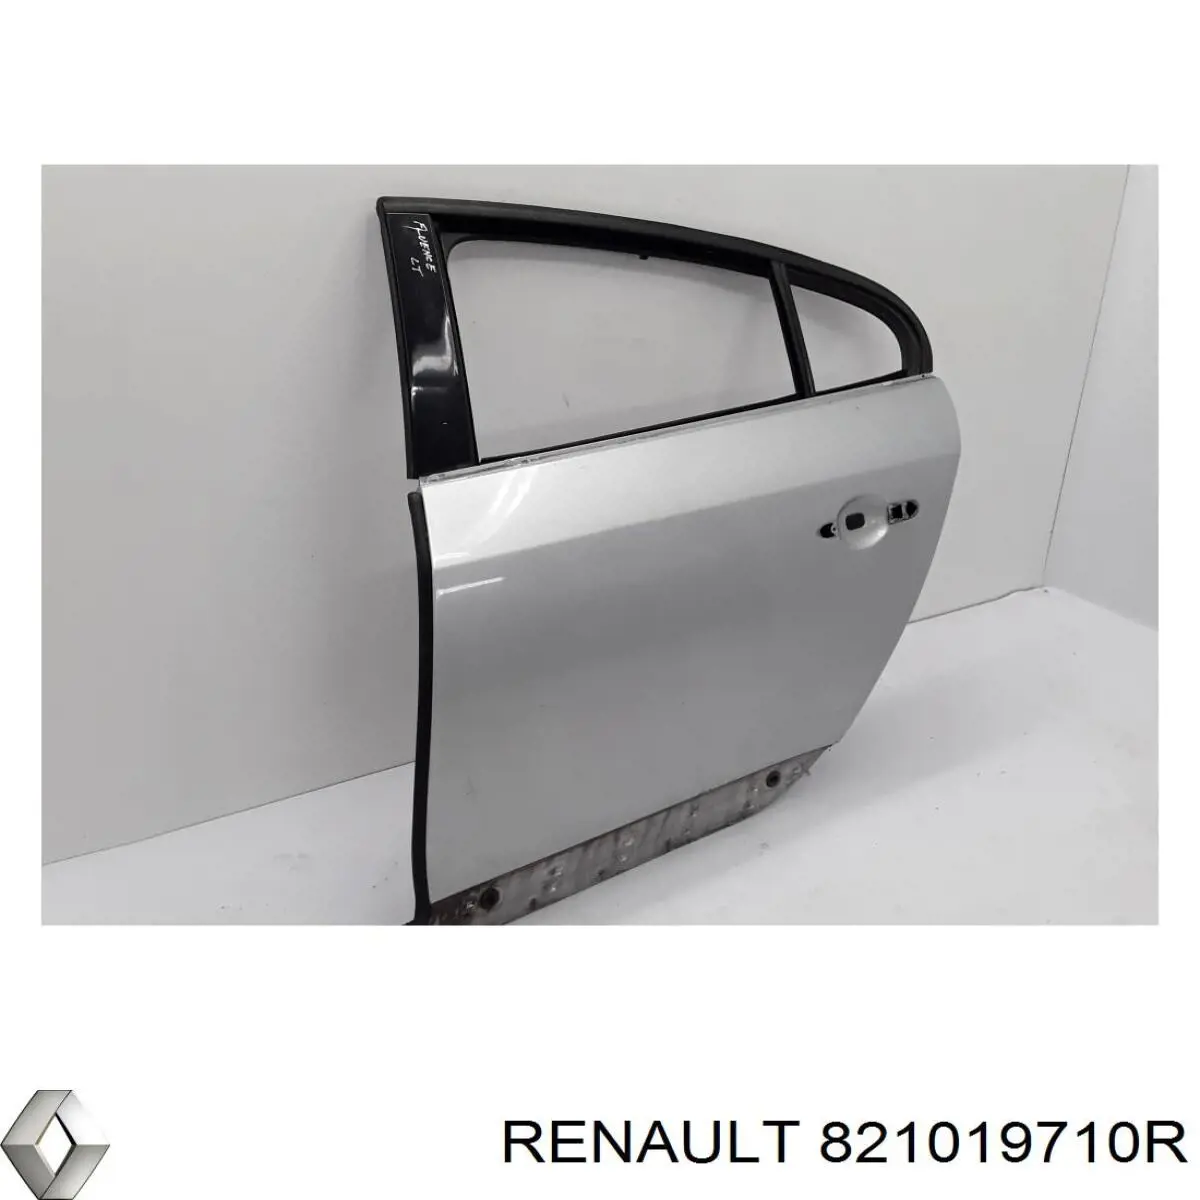 821011173R Renault (RVI) puerta trasera izquierda